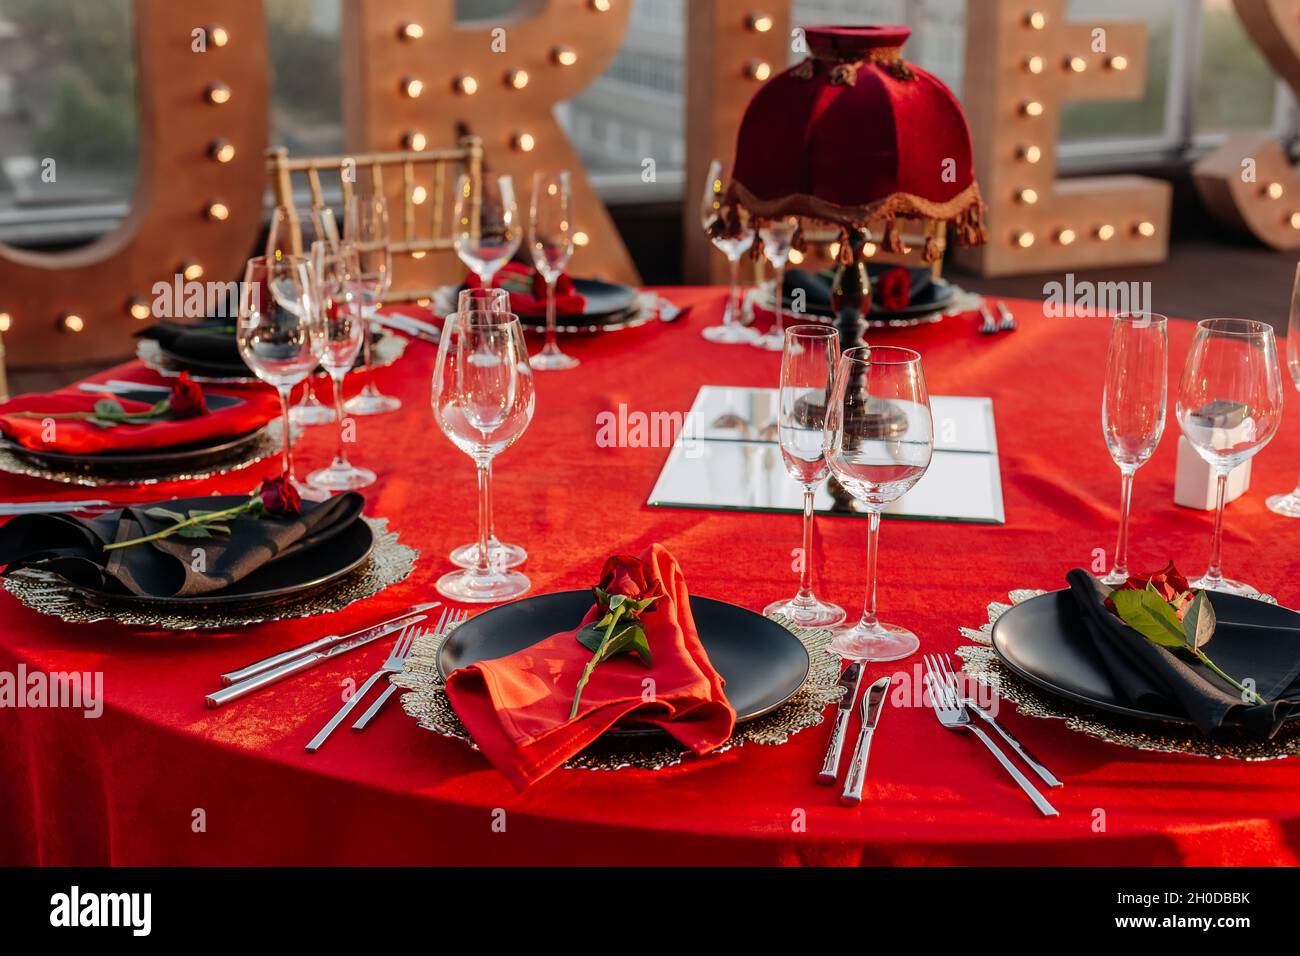 Elegante banquete en una mesa ornamentada con vajilla de cristal y  cubiertos generados por ia